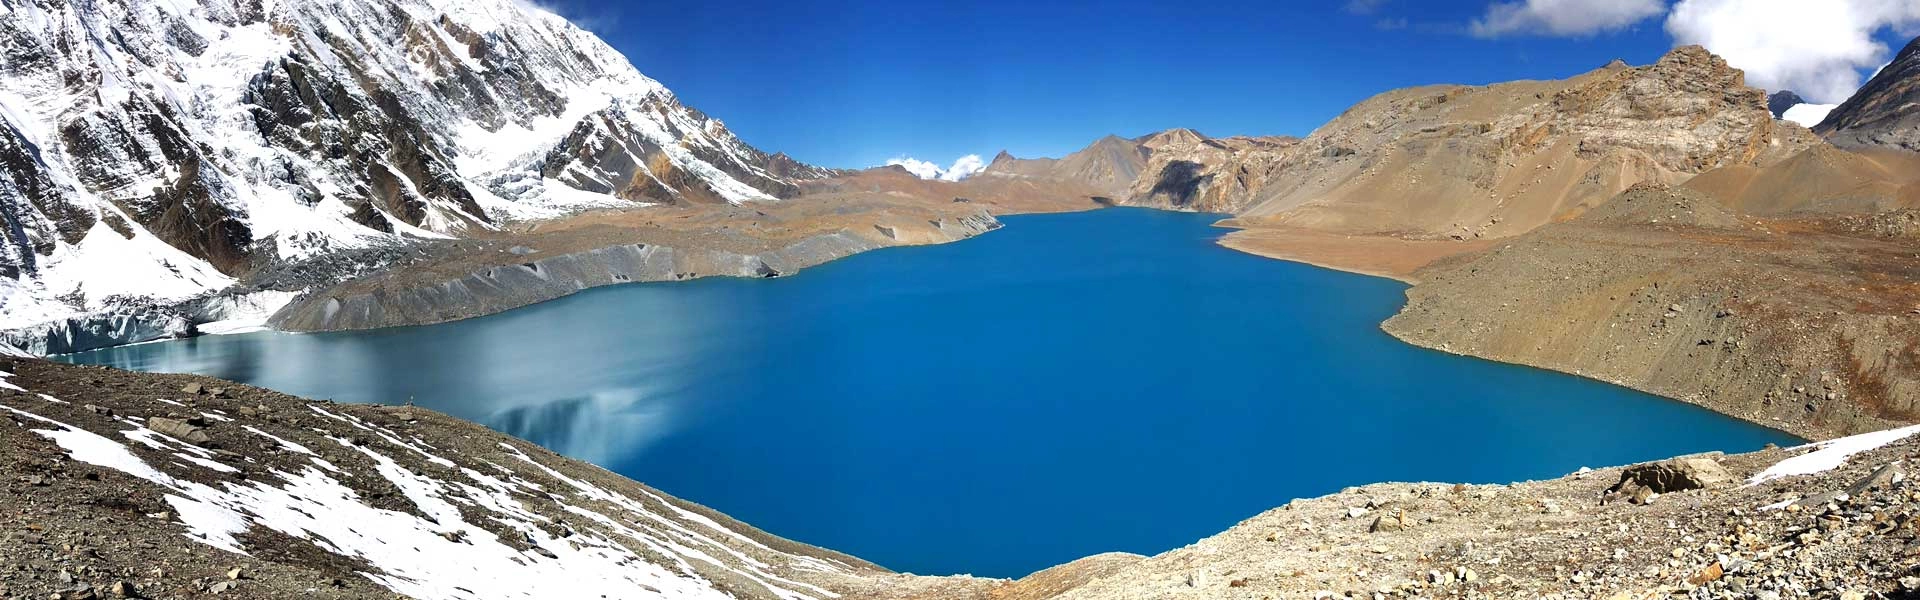 List of Lake Treks in Nepal